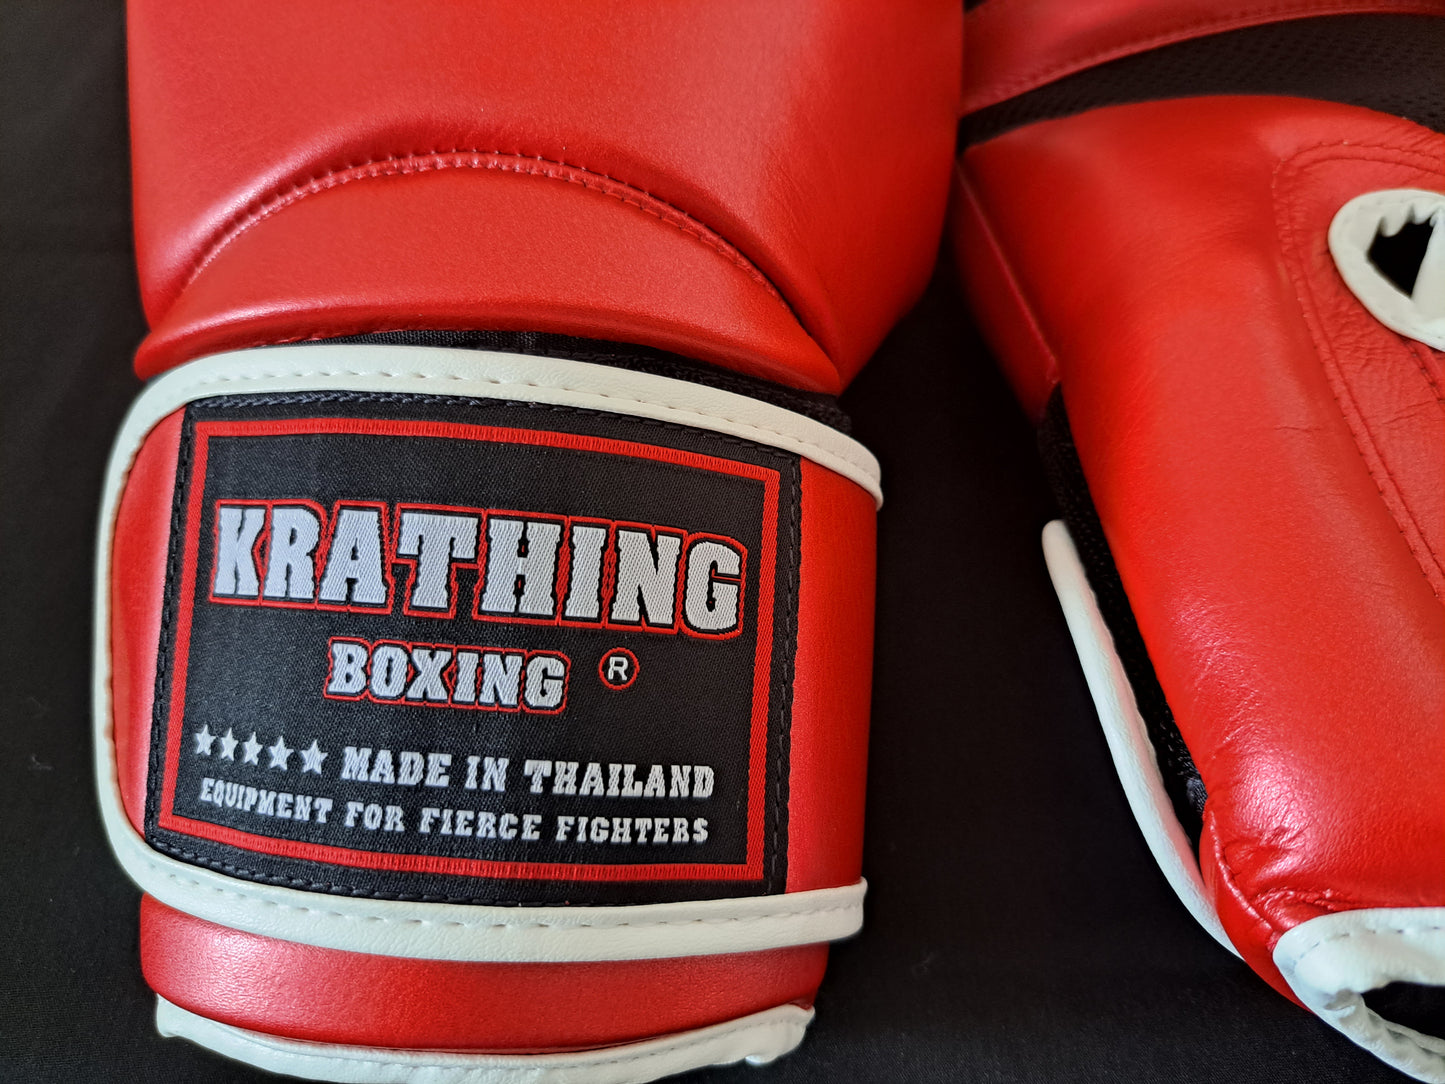 Krathing Thai Boxing Gloves - Micro Fiber - Red